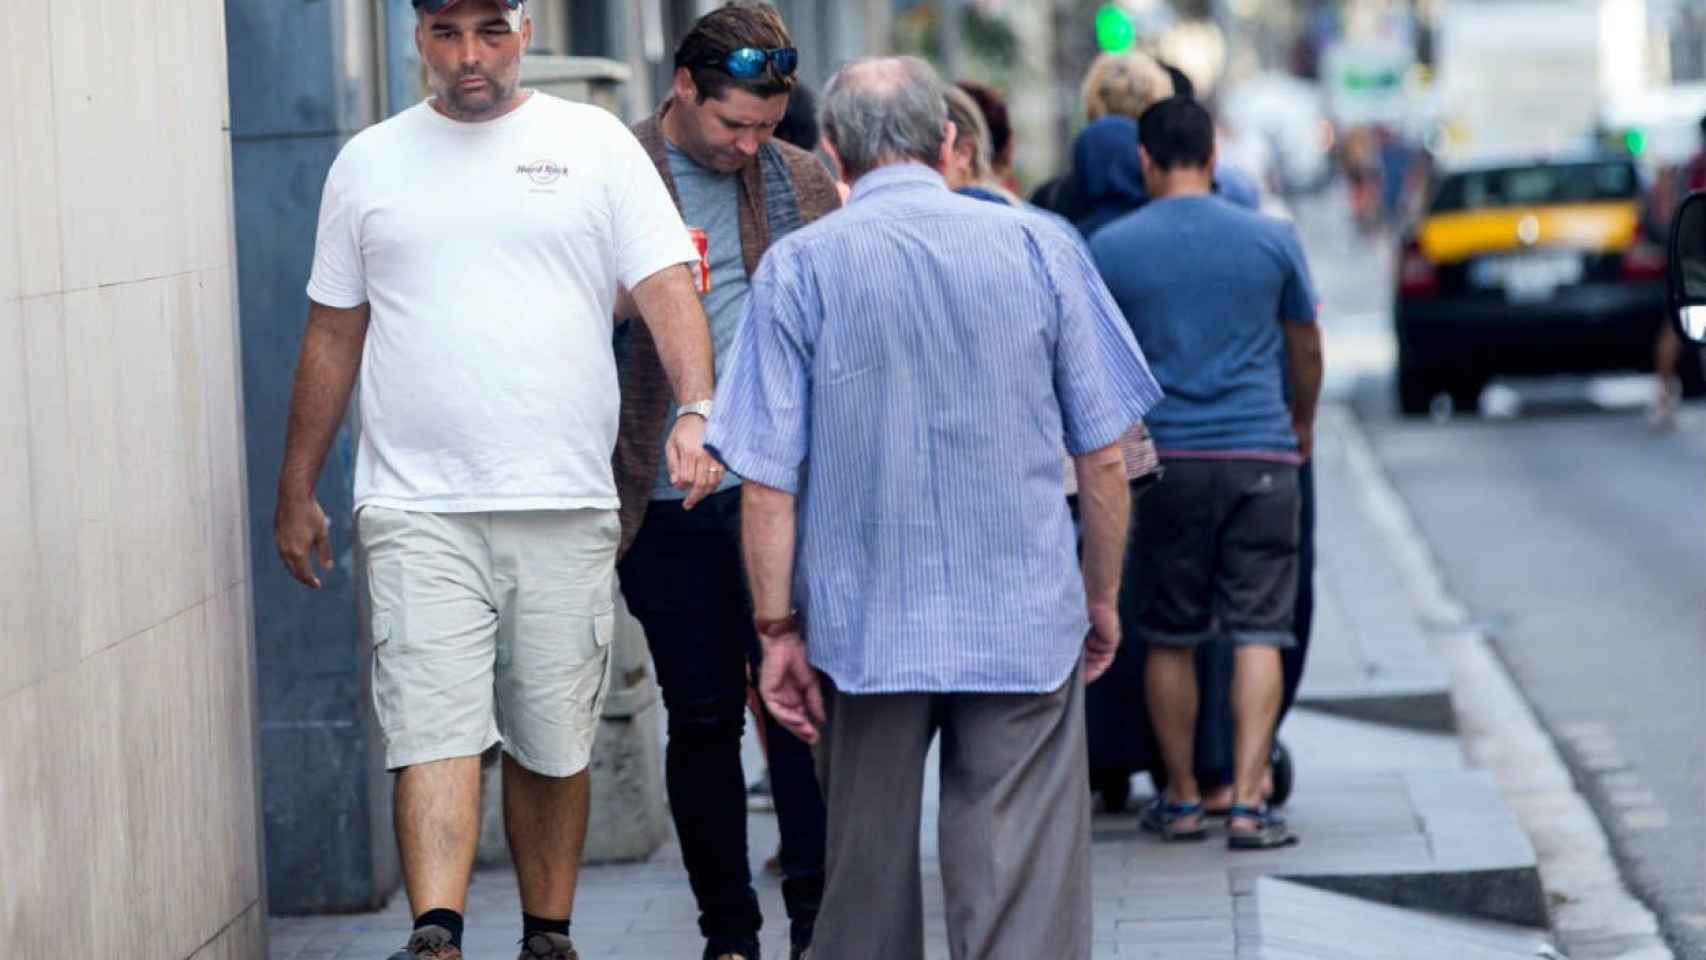 El turista americano agredido paseando por una calle de Barcelona / Quique Garcia - EFE